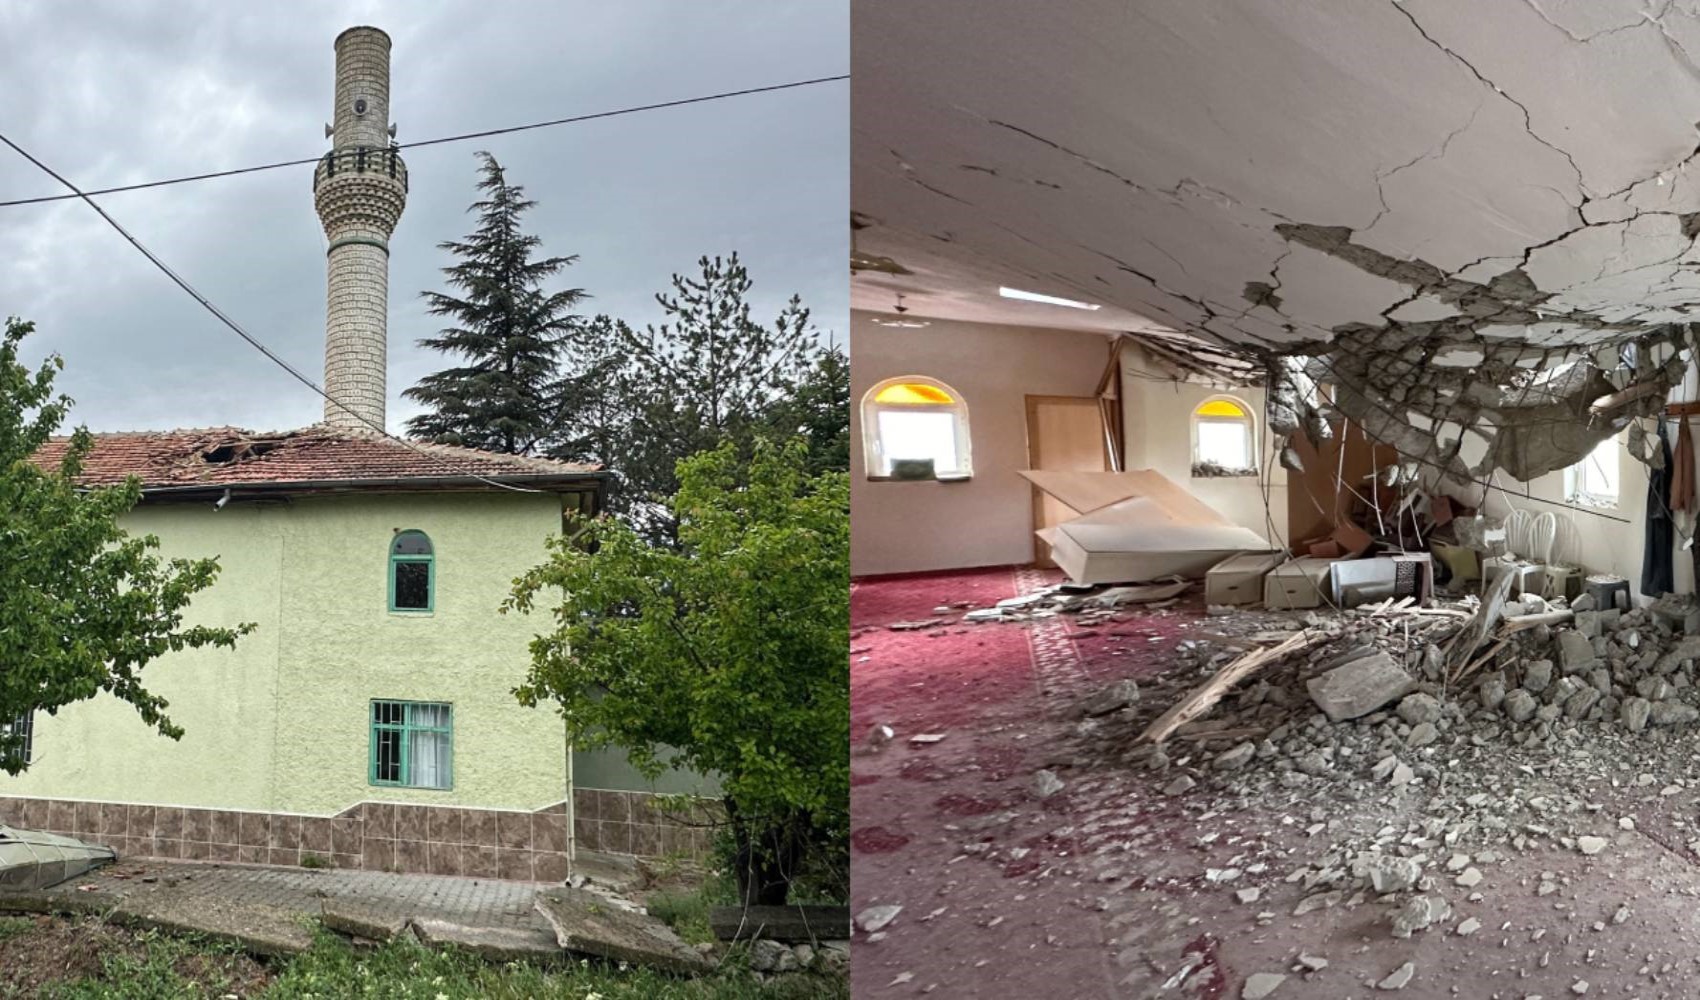 Şiddetli rüzgar 2 caminin minaresini yıktı